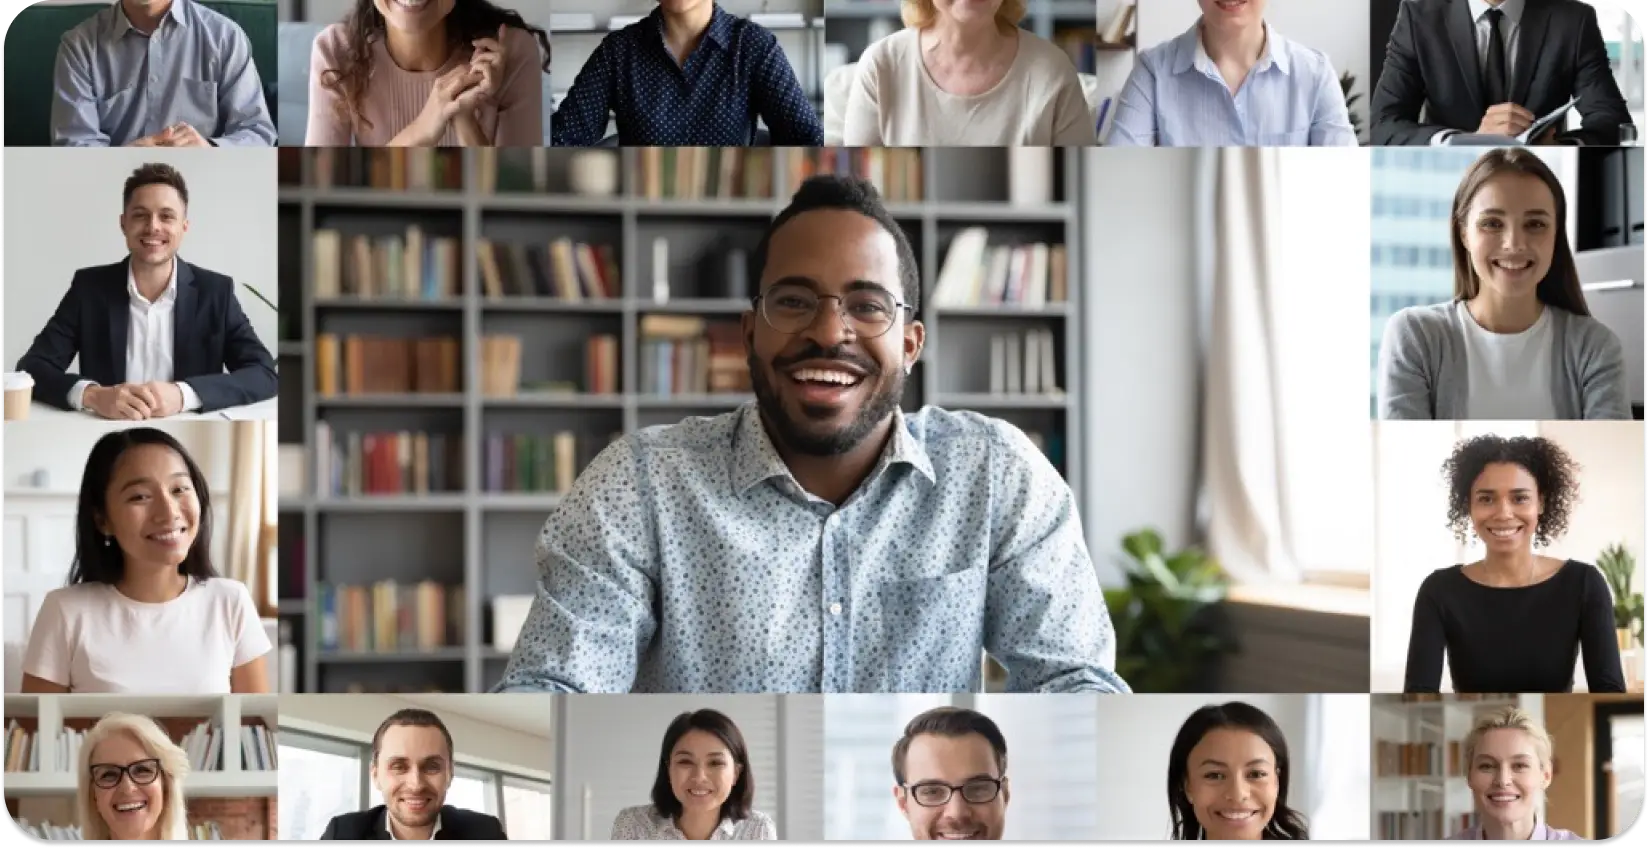 Koláž rôznych odborníkov na virtuálnom stretnutí, ktorá predstavuje inkluzívnosť na pracovisku.